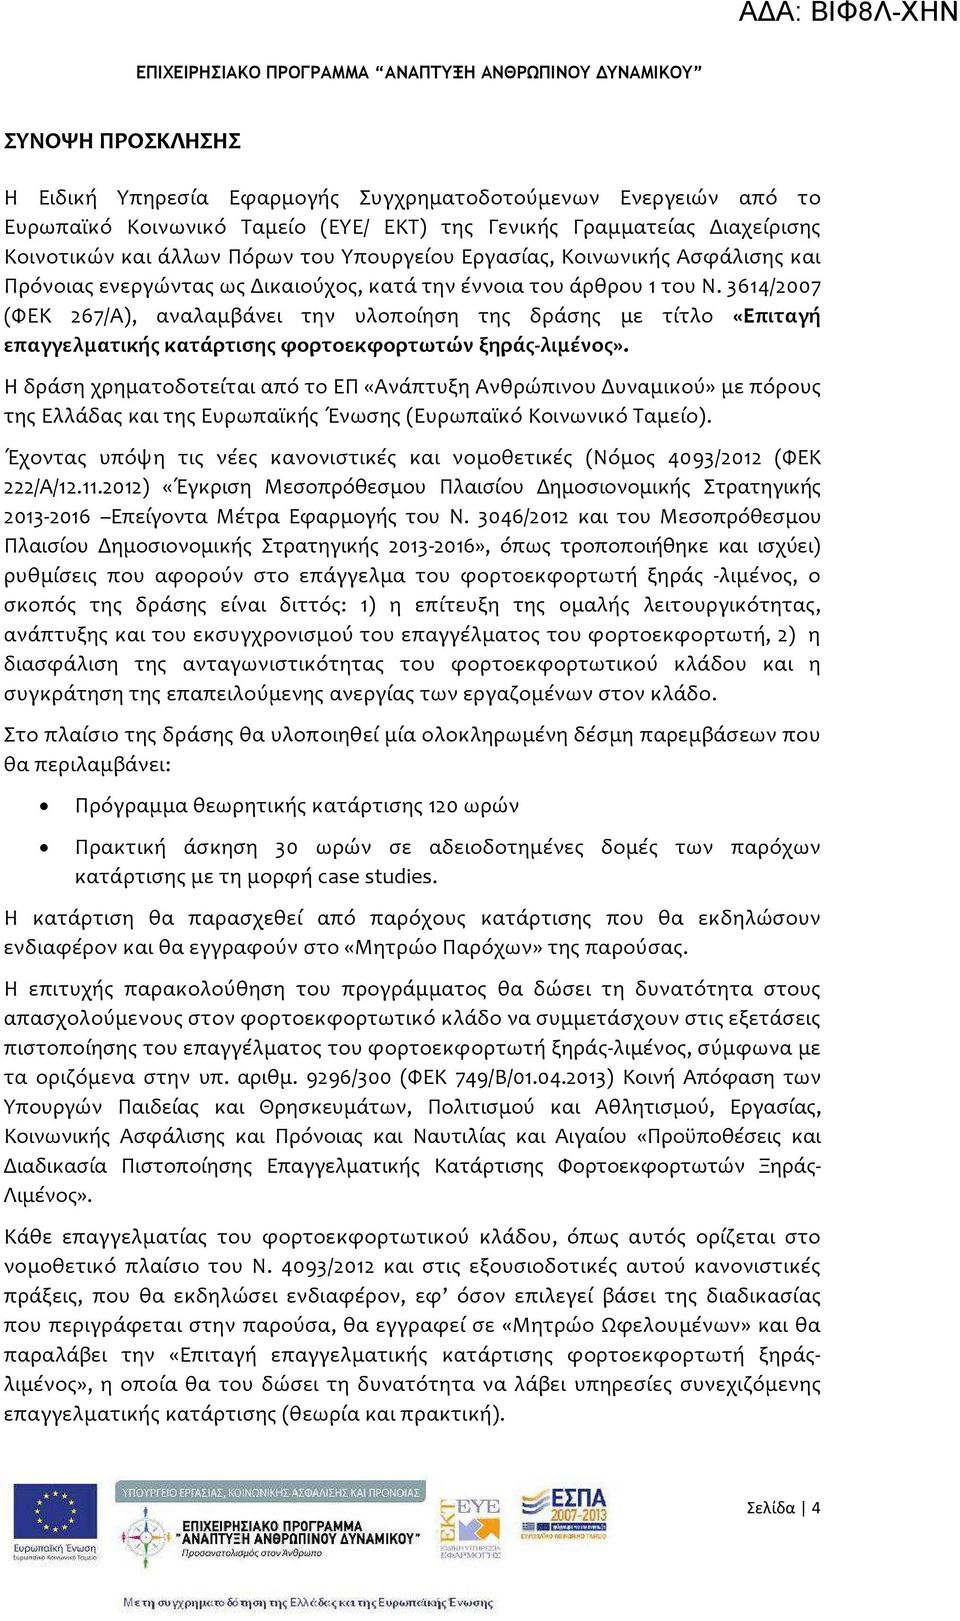 3614/2007 (ΦΕΚ 267/Α), αναλαμβάνει την υλοποίηση της δράσης με τίτλο «Επιταγή επαγγελματικής κατάρτισης φορτοεκφορτωτών ξηράς-λιμένος».